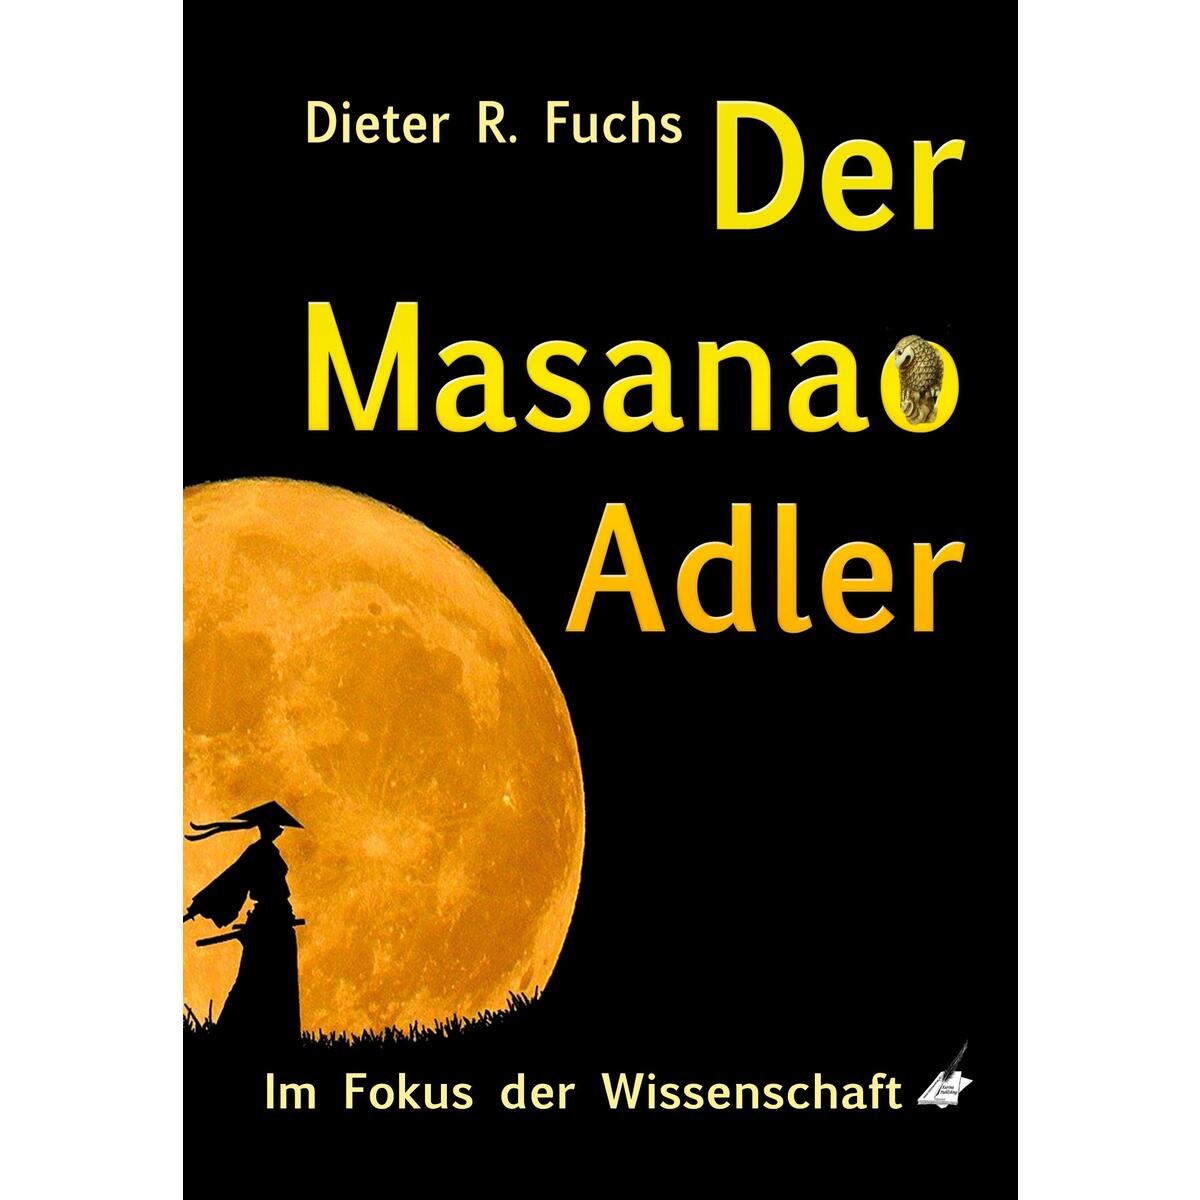 Der Masanao Adler von Karina Verlag, Wien